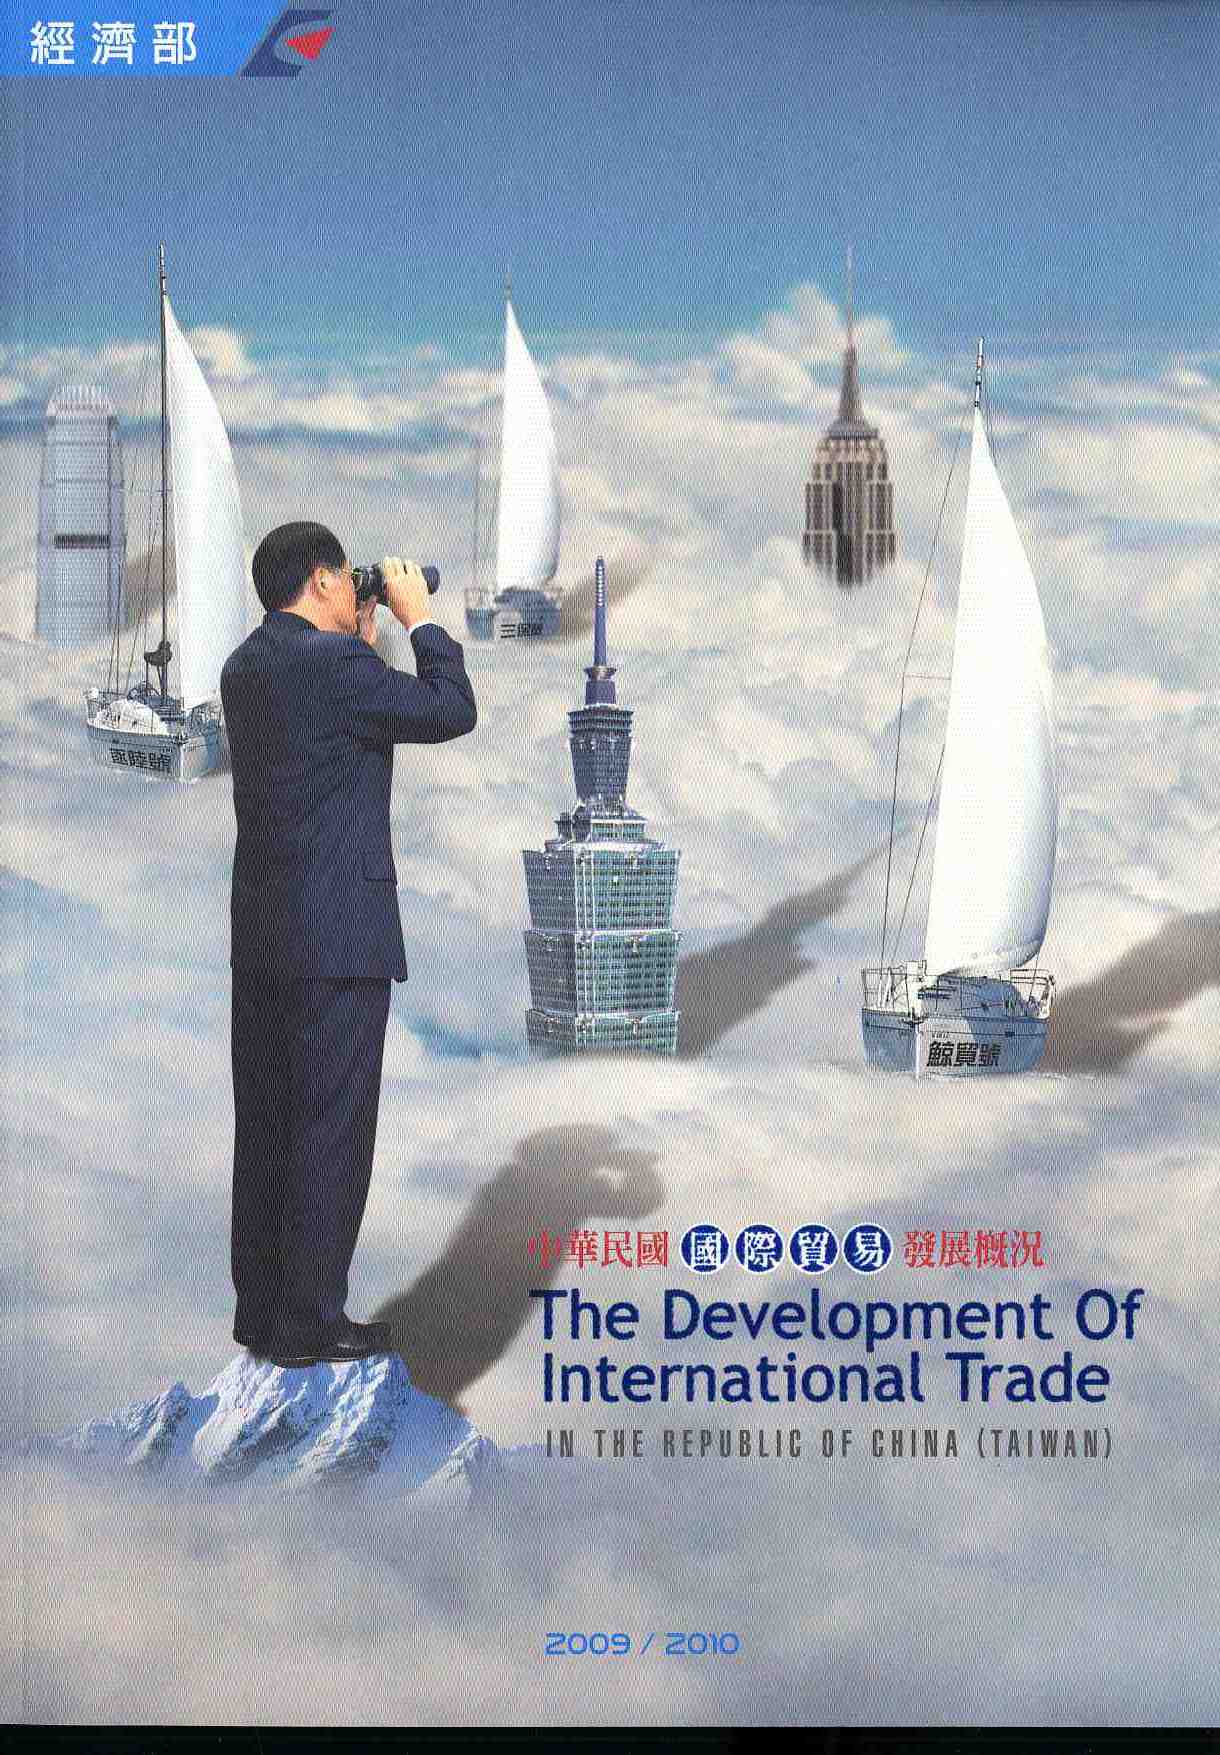 中華民國國際貿易發展概況(2009-2010)